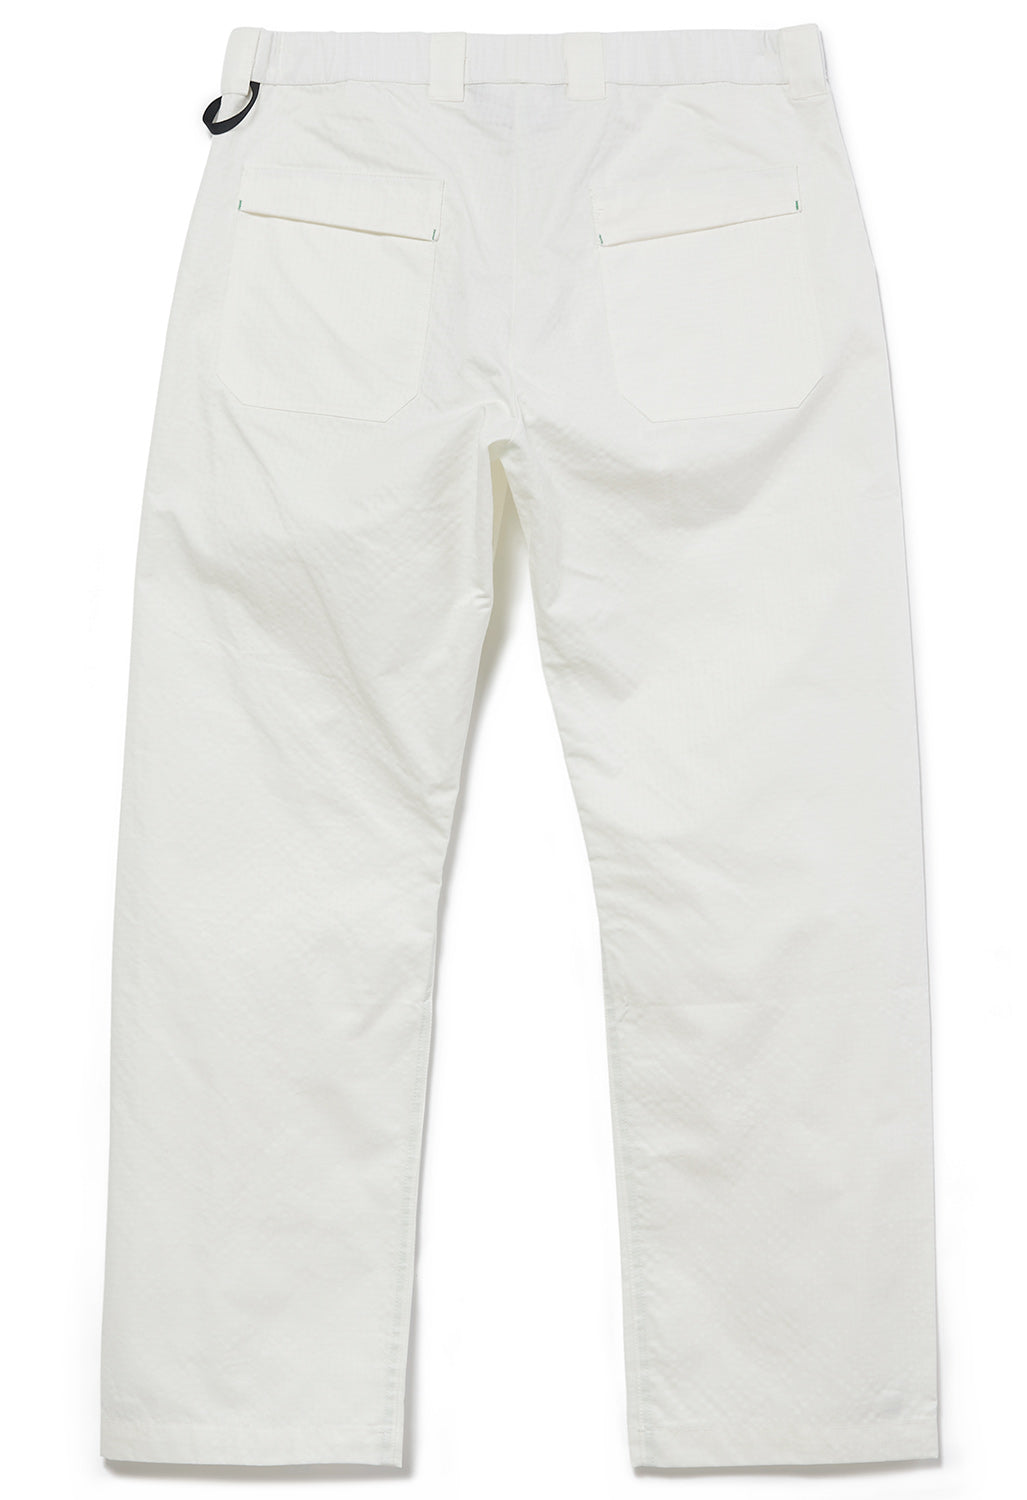 Rayon Vert Fubar Pants Ready To Dye - Fangs White